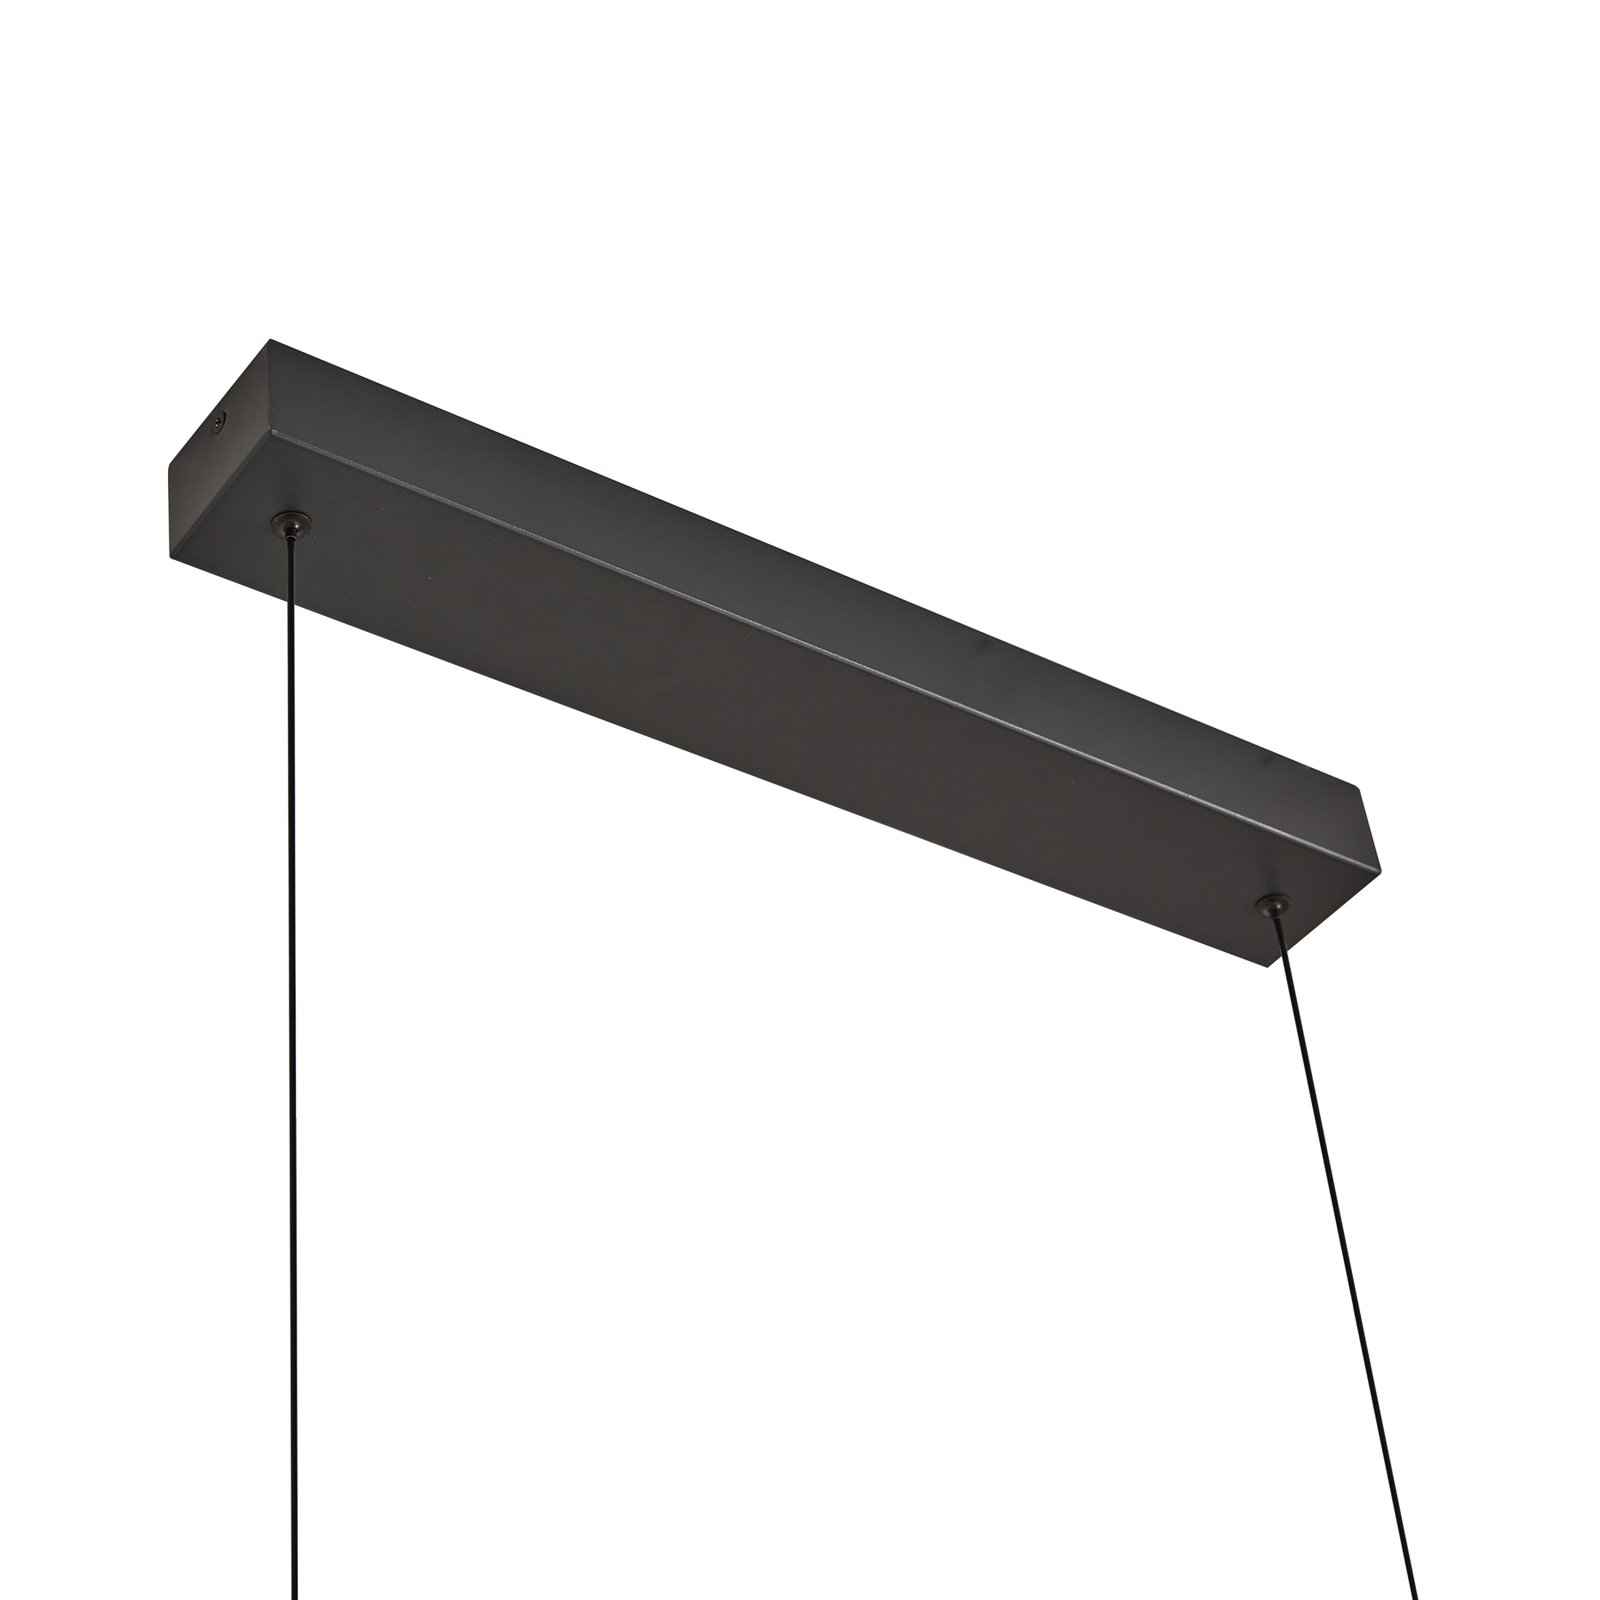 Lucande LED-riippuvalaisin Madu, musta, metallia, 92,5 cm pitkä